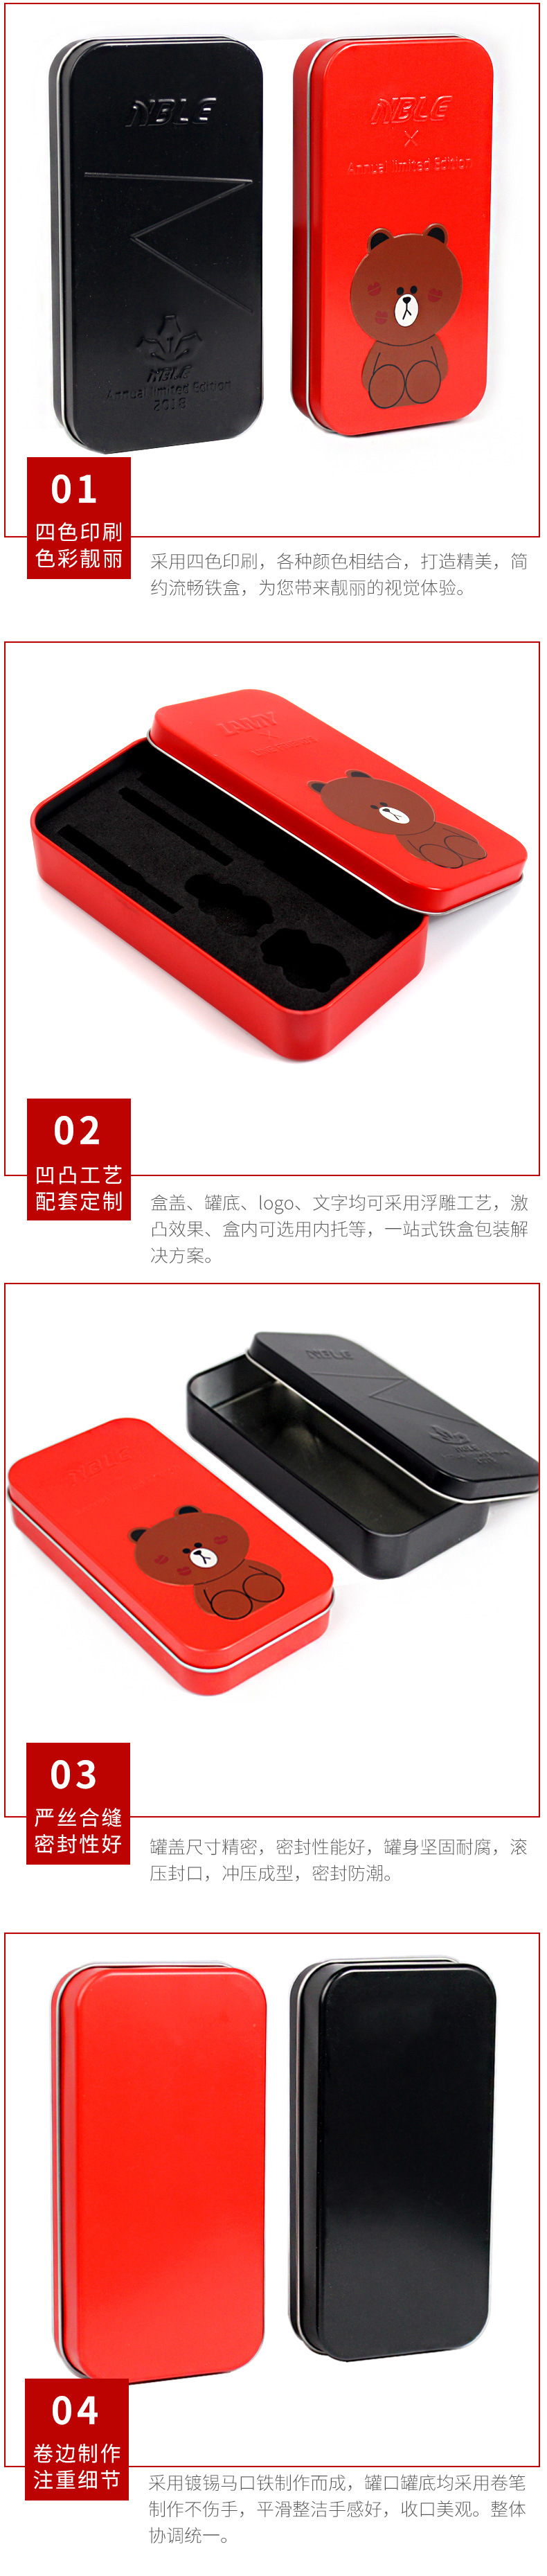 工厂直销电池数据线铁盒包装 长方形  红黑色钢笔盒定制 免费拿样示例图12